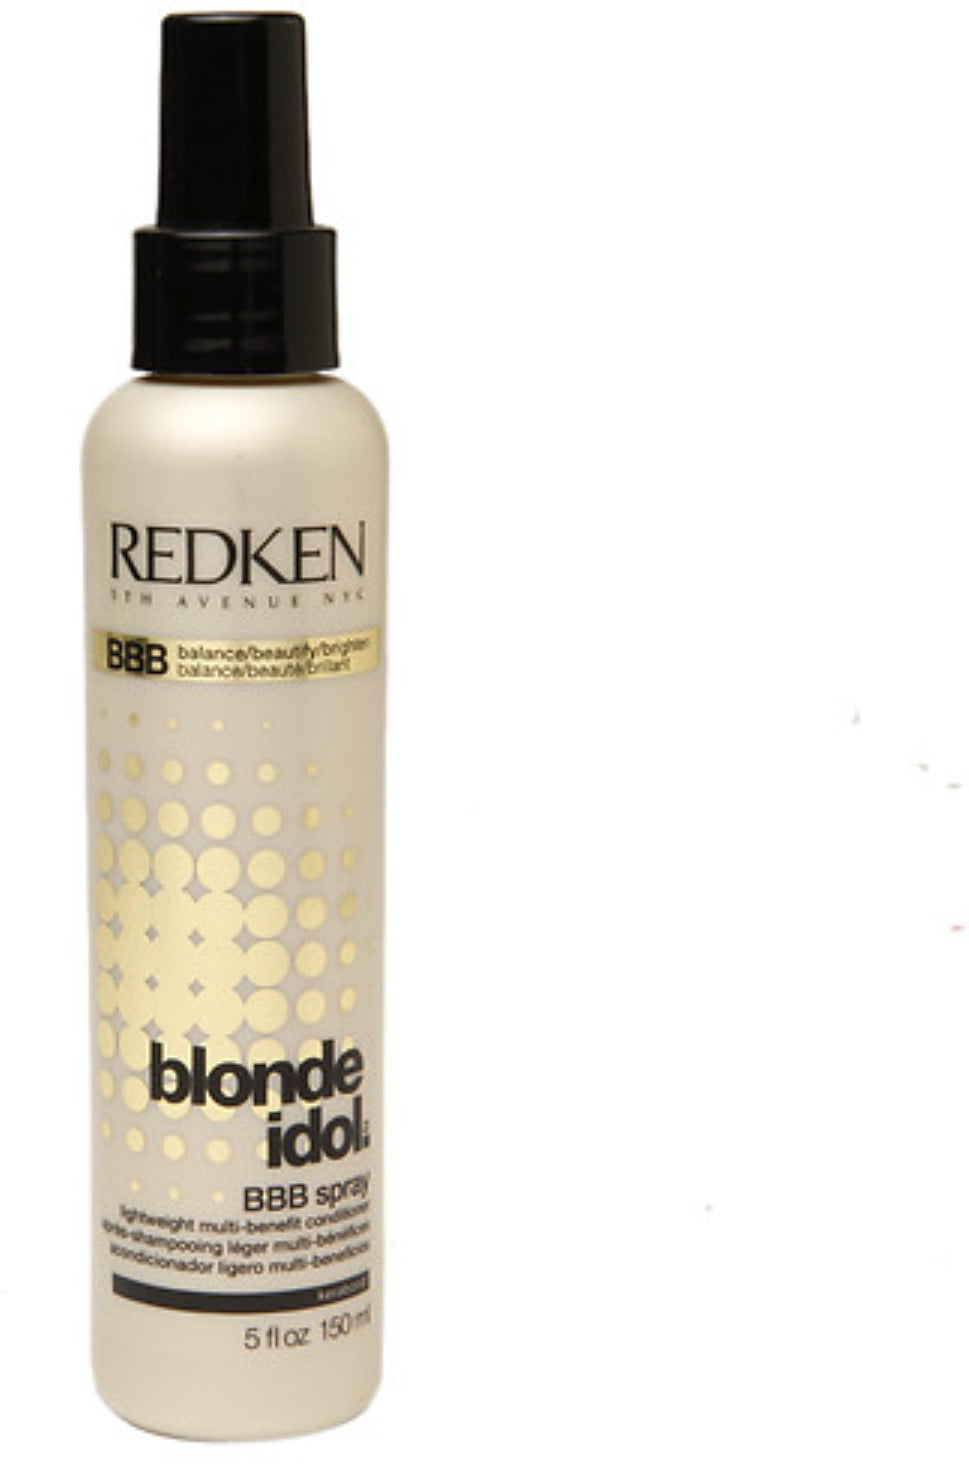 Redken blonde Idol. Redken спрей для волос. Спрей blonde. Спрей для блондинок.